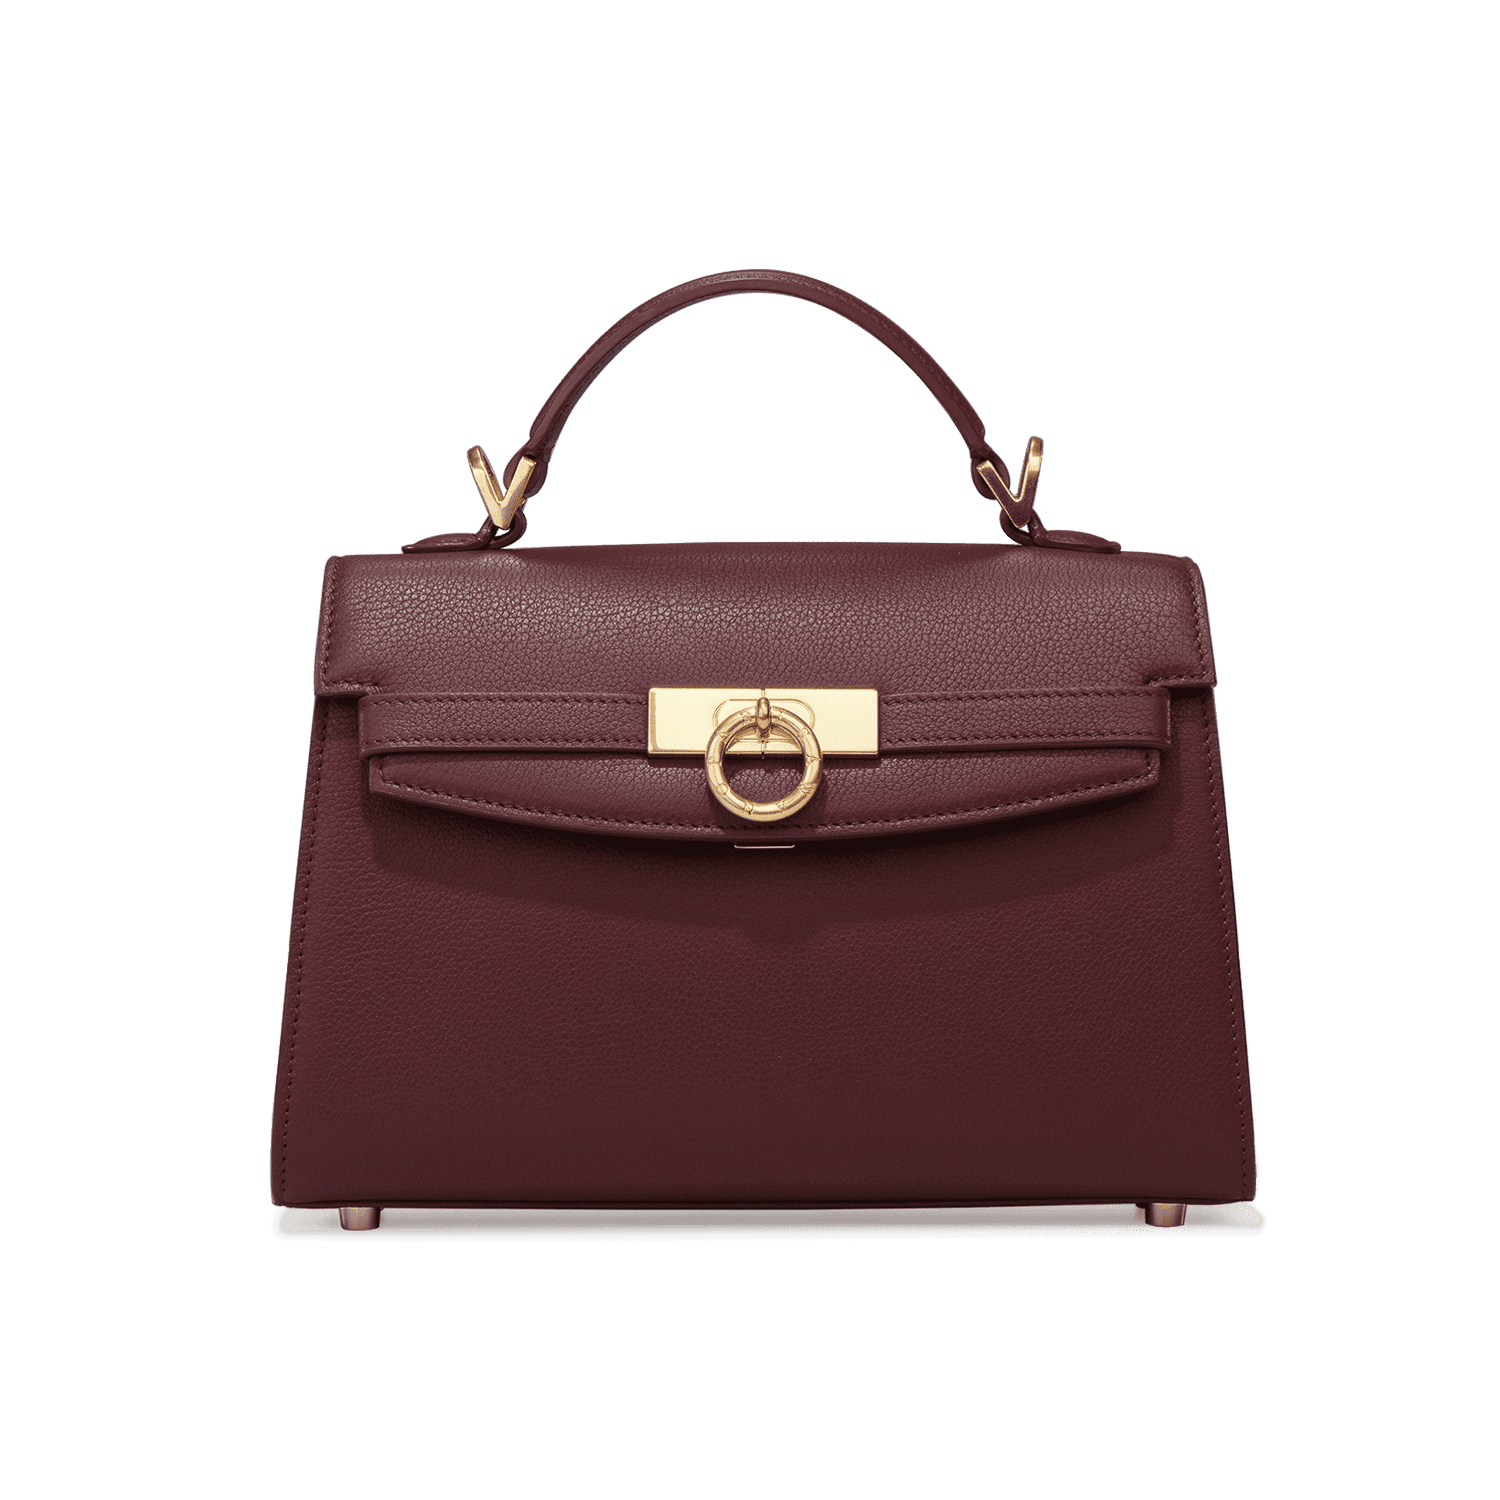 Callista Grace Top Handle Clutch Bag | Neiman Marcus